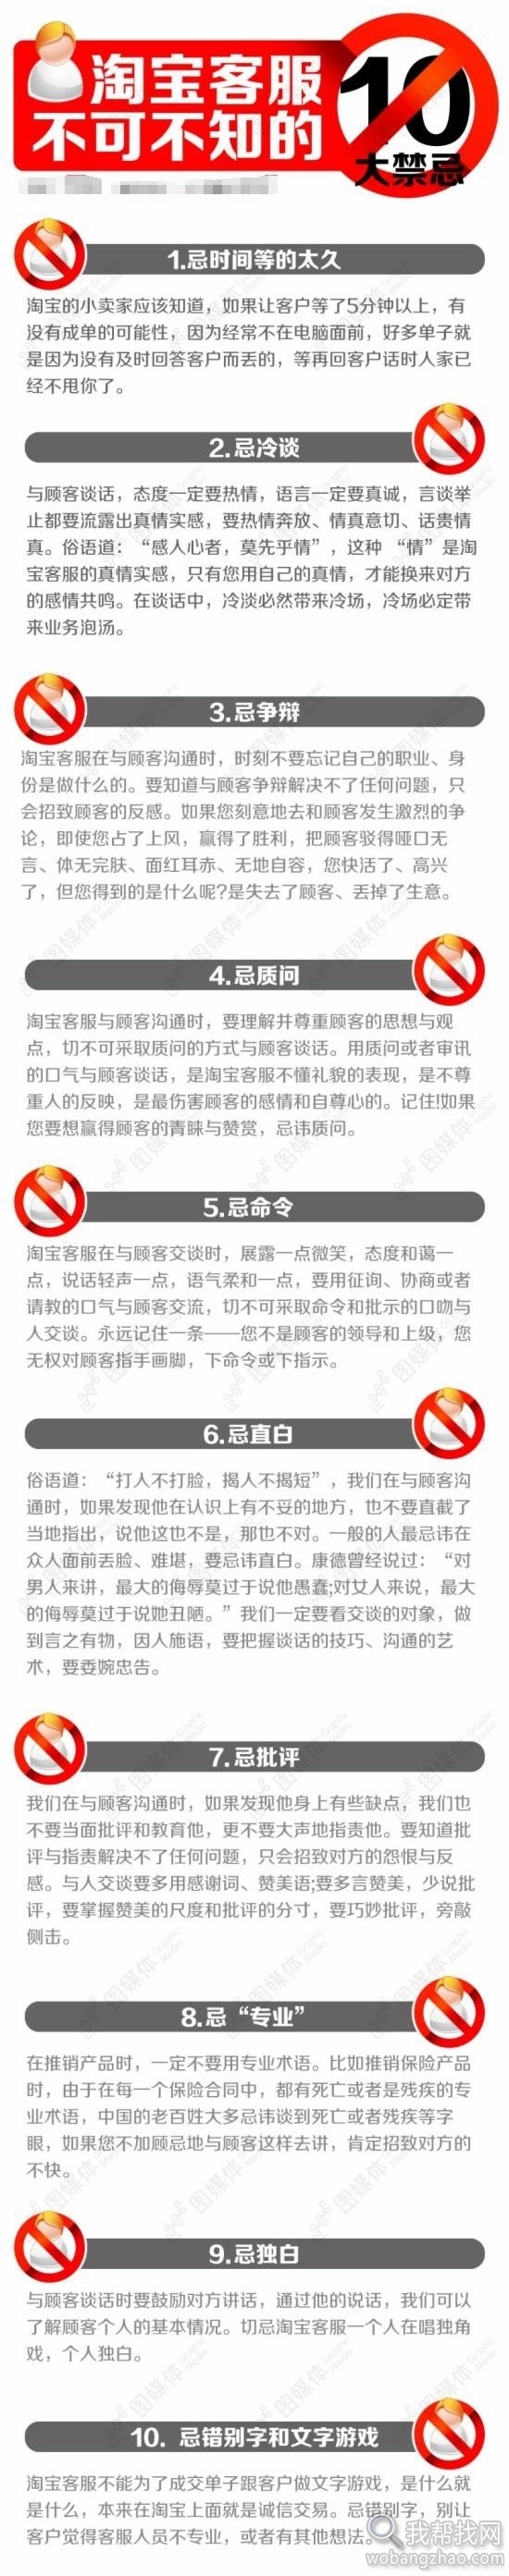 淘宝天猫电商运营客服培训模板 (1).jpg